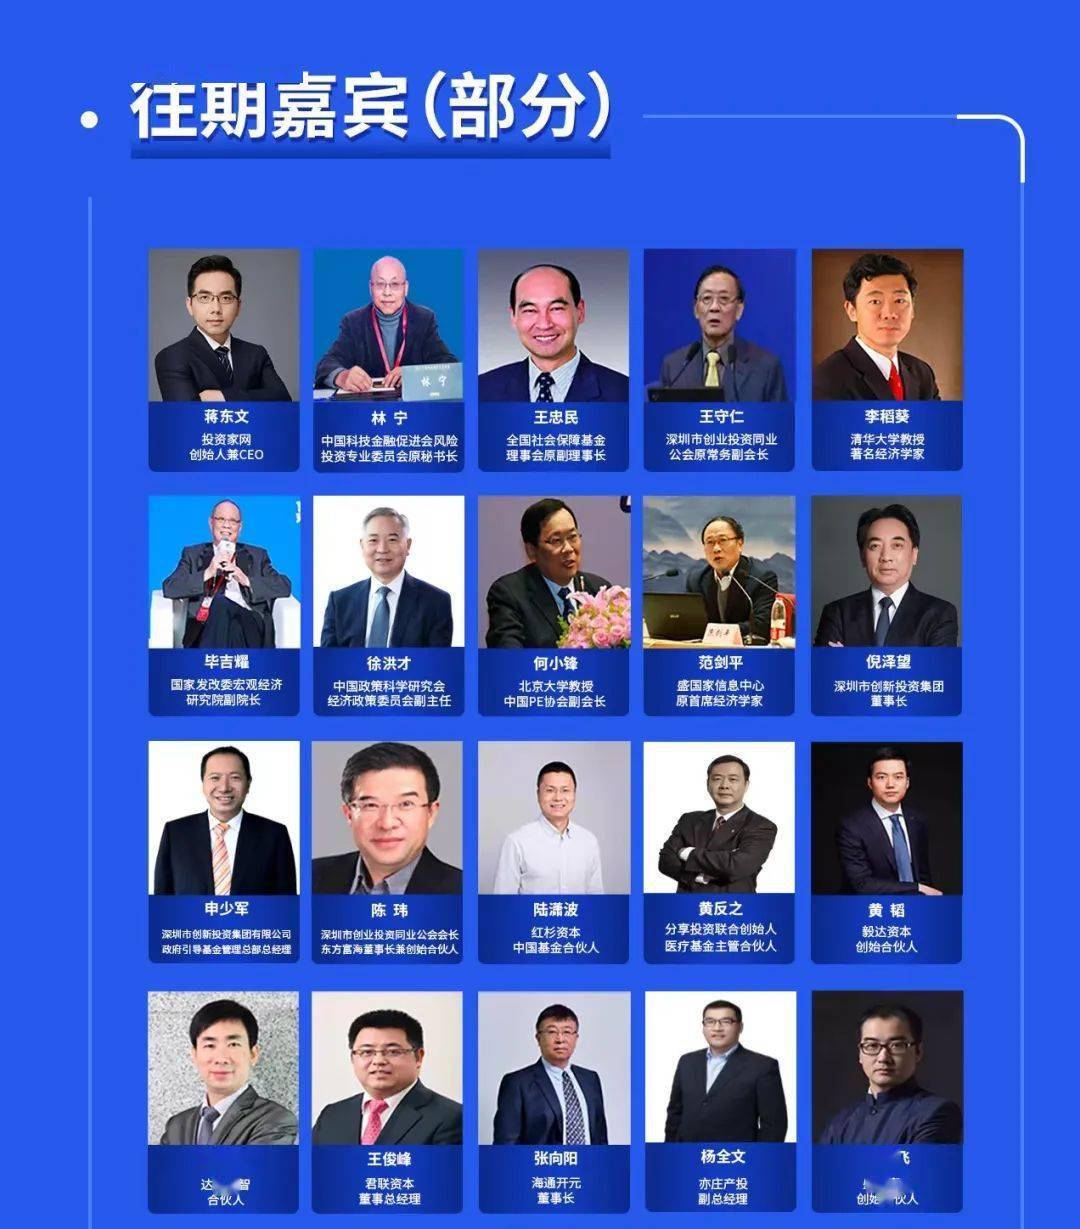 “万物资生 福启未来”——2022中国股权投资年度峰会将在深圳福田隆重启幕